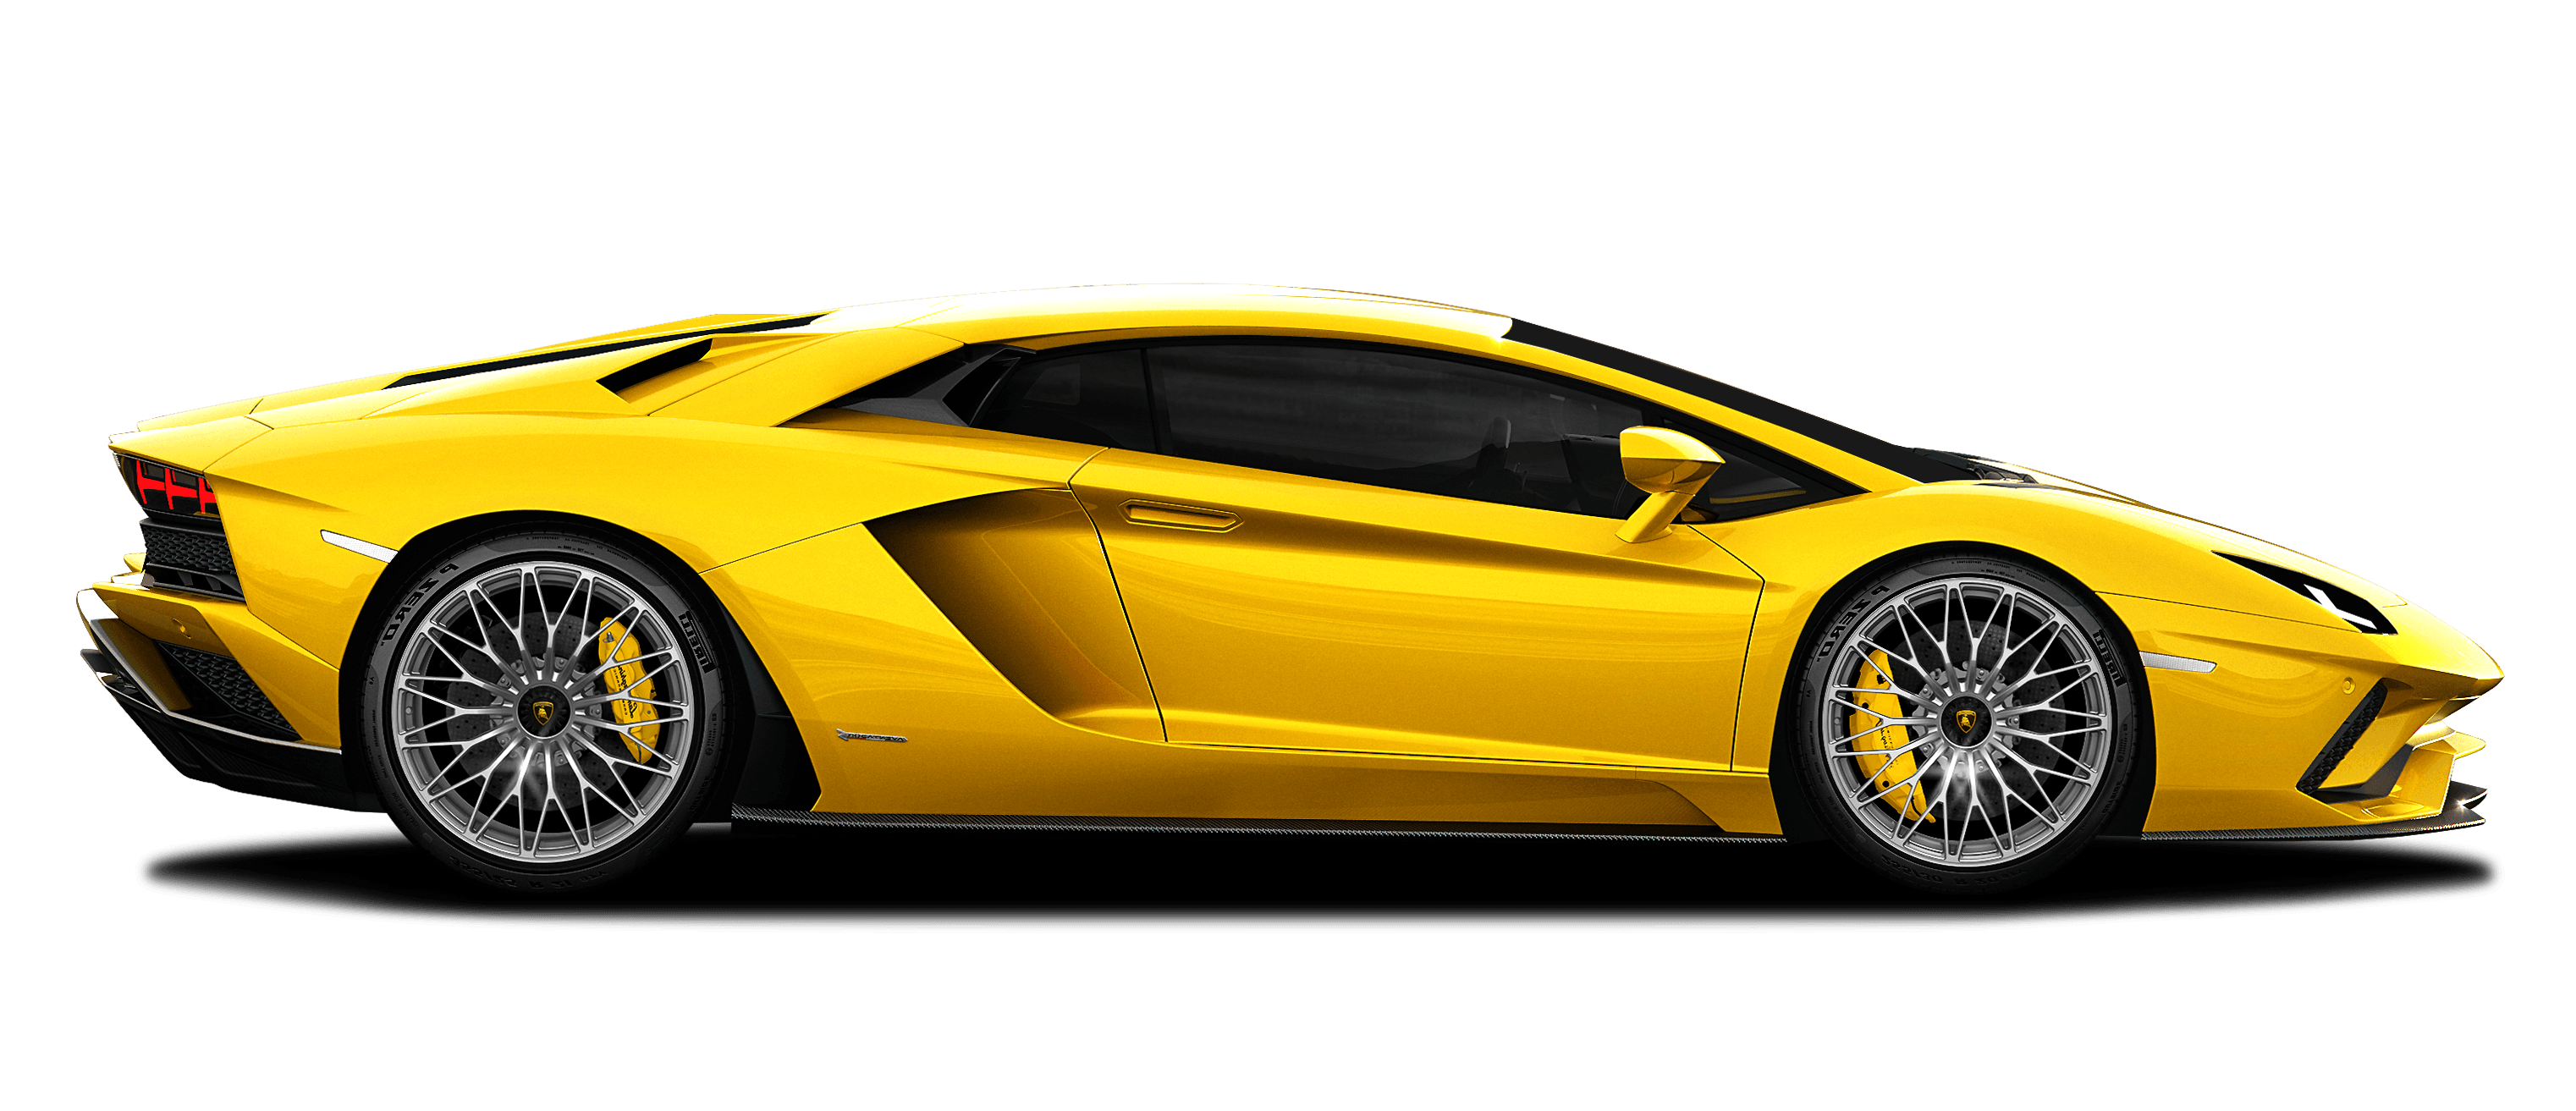 Imagen PNG de Lamborghinin de alta calidad